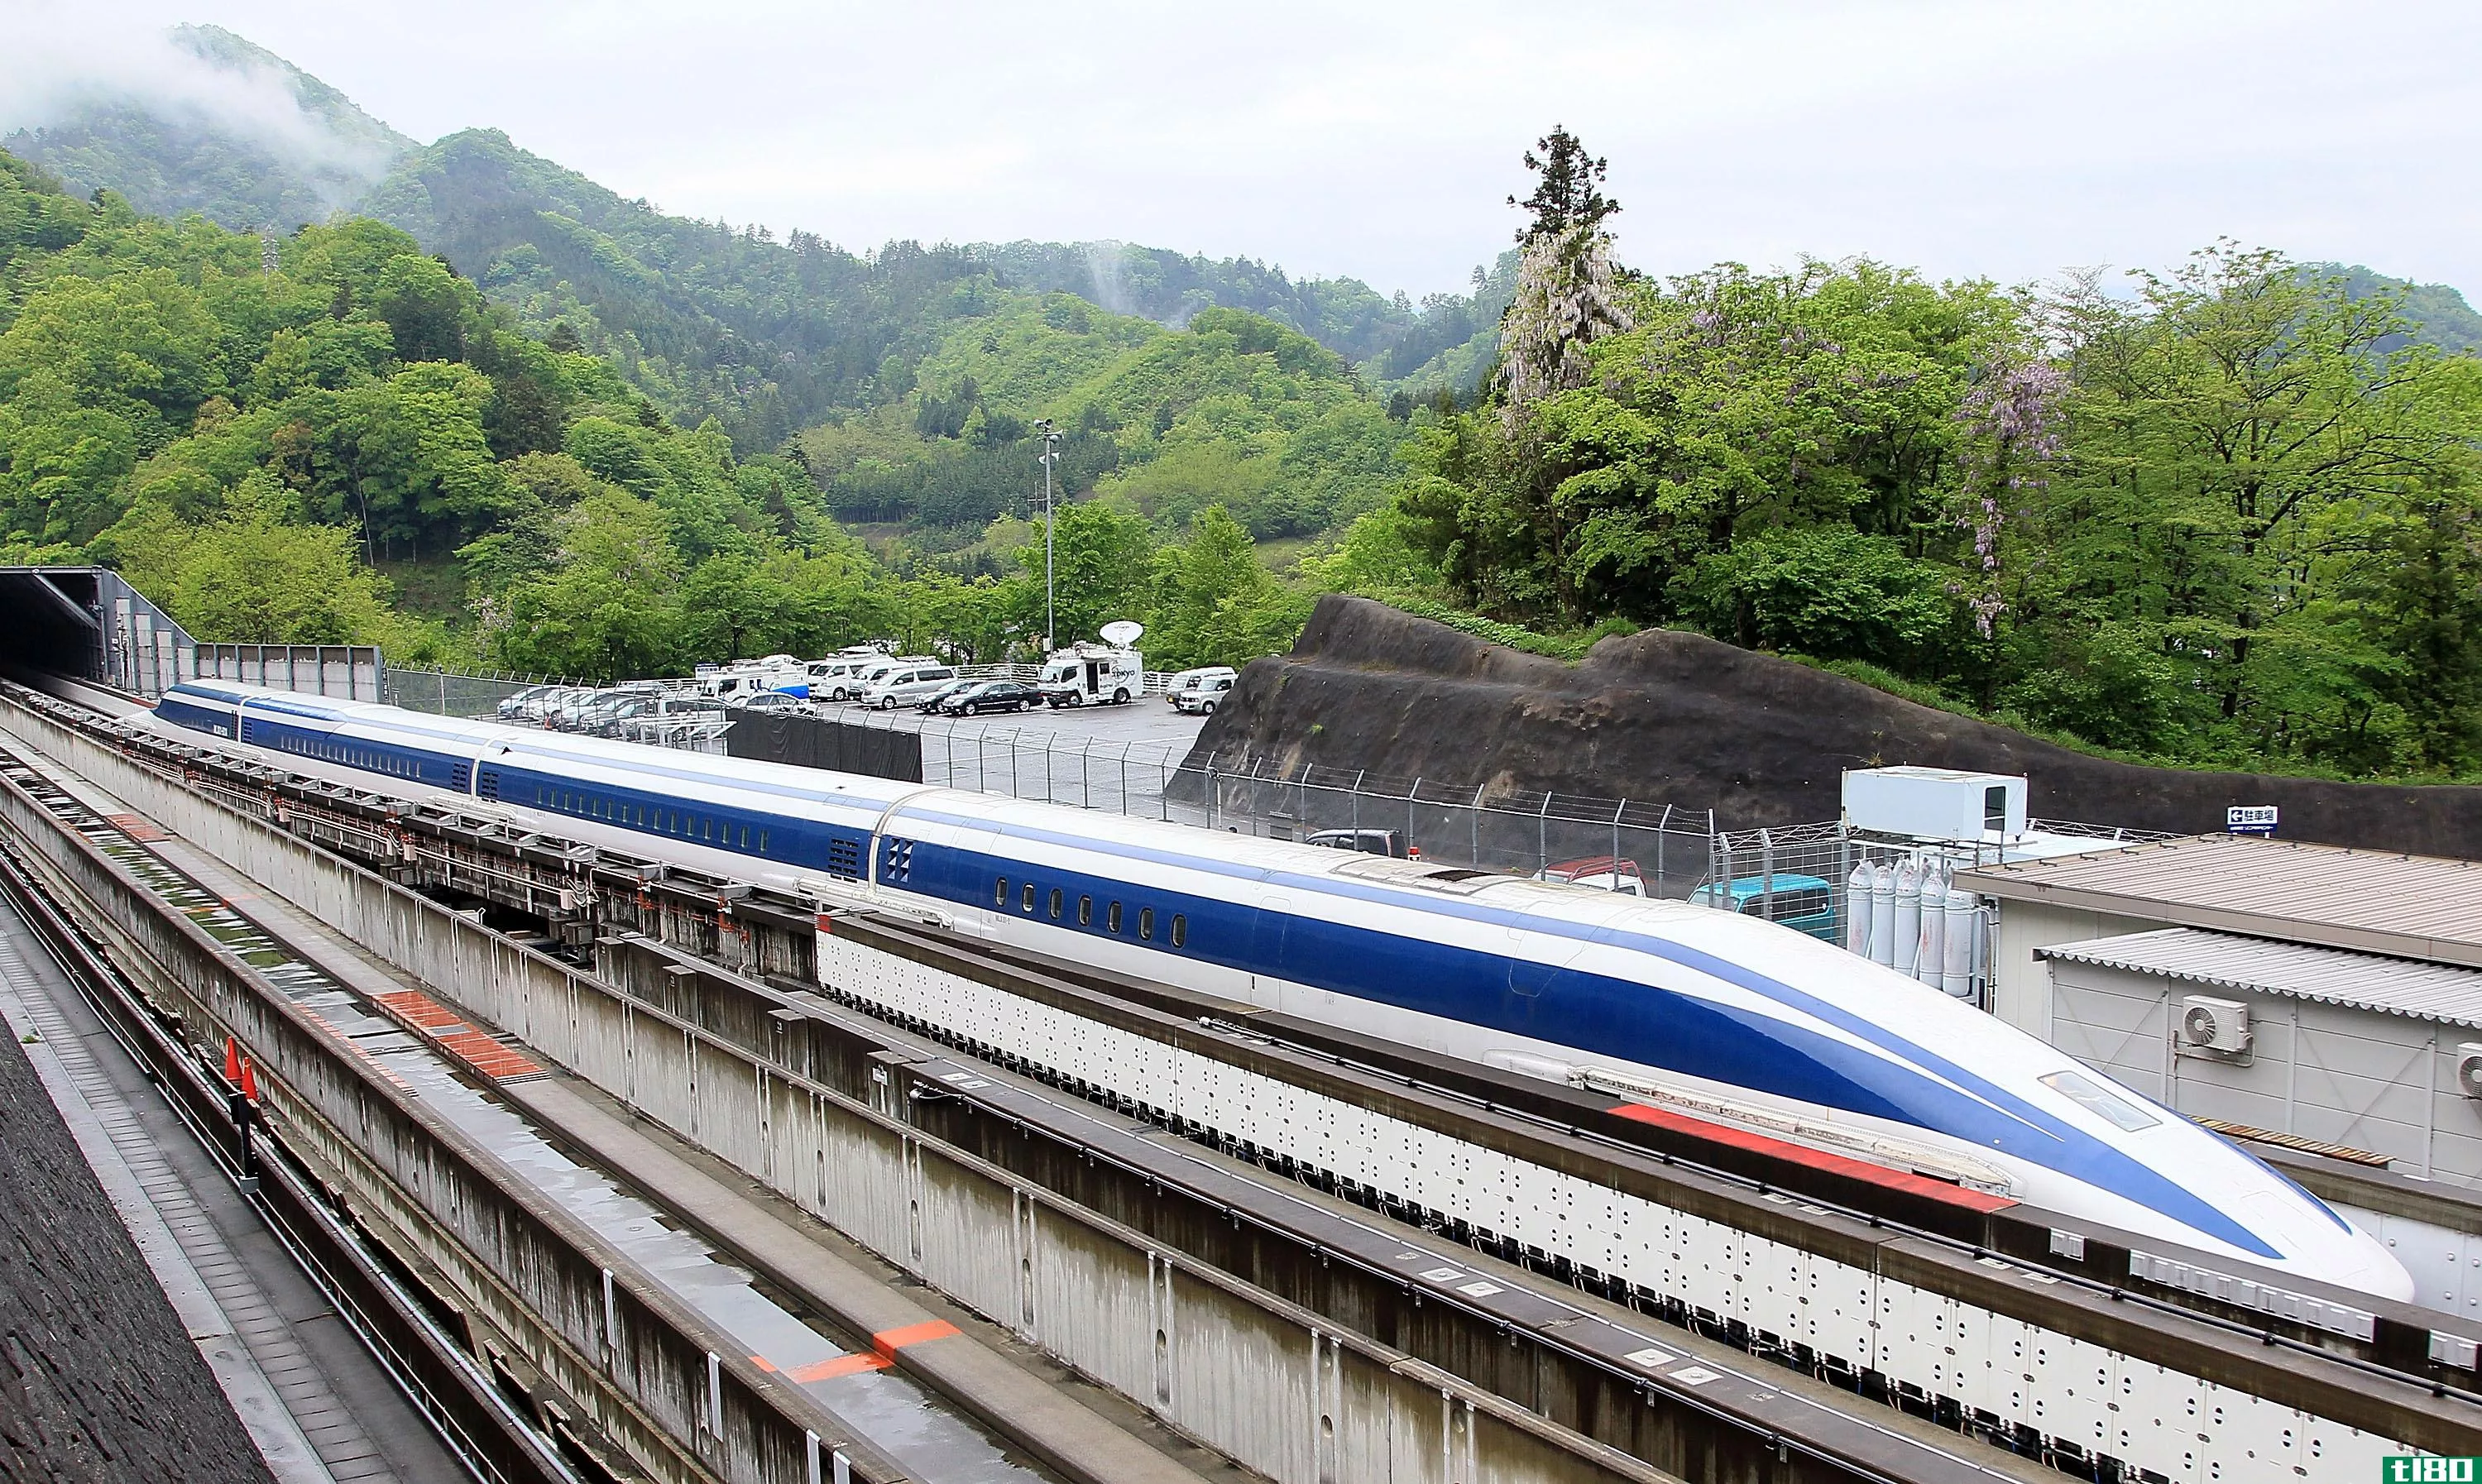 日本磁悬浮列车一周内第二次打破世界速度纪录